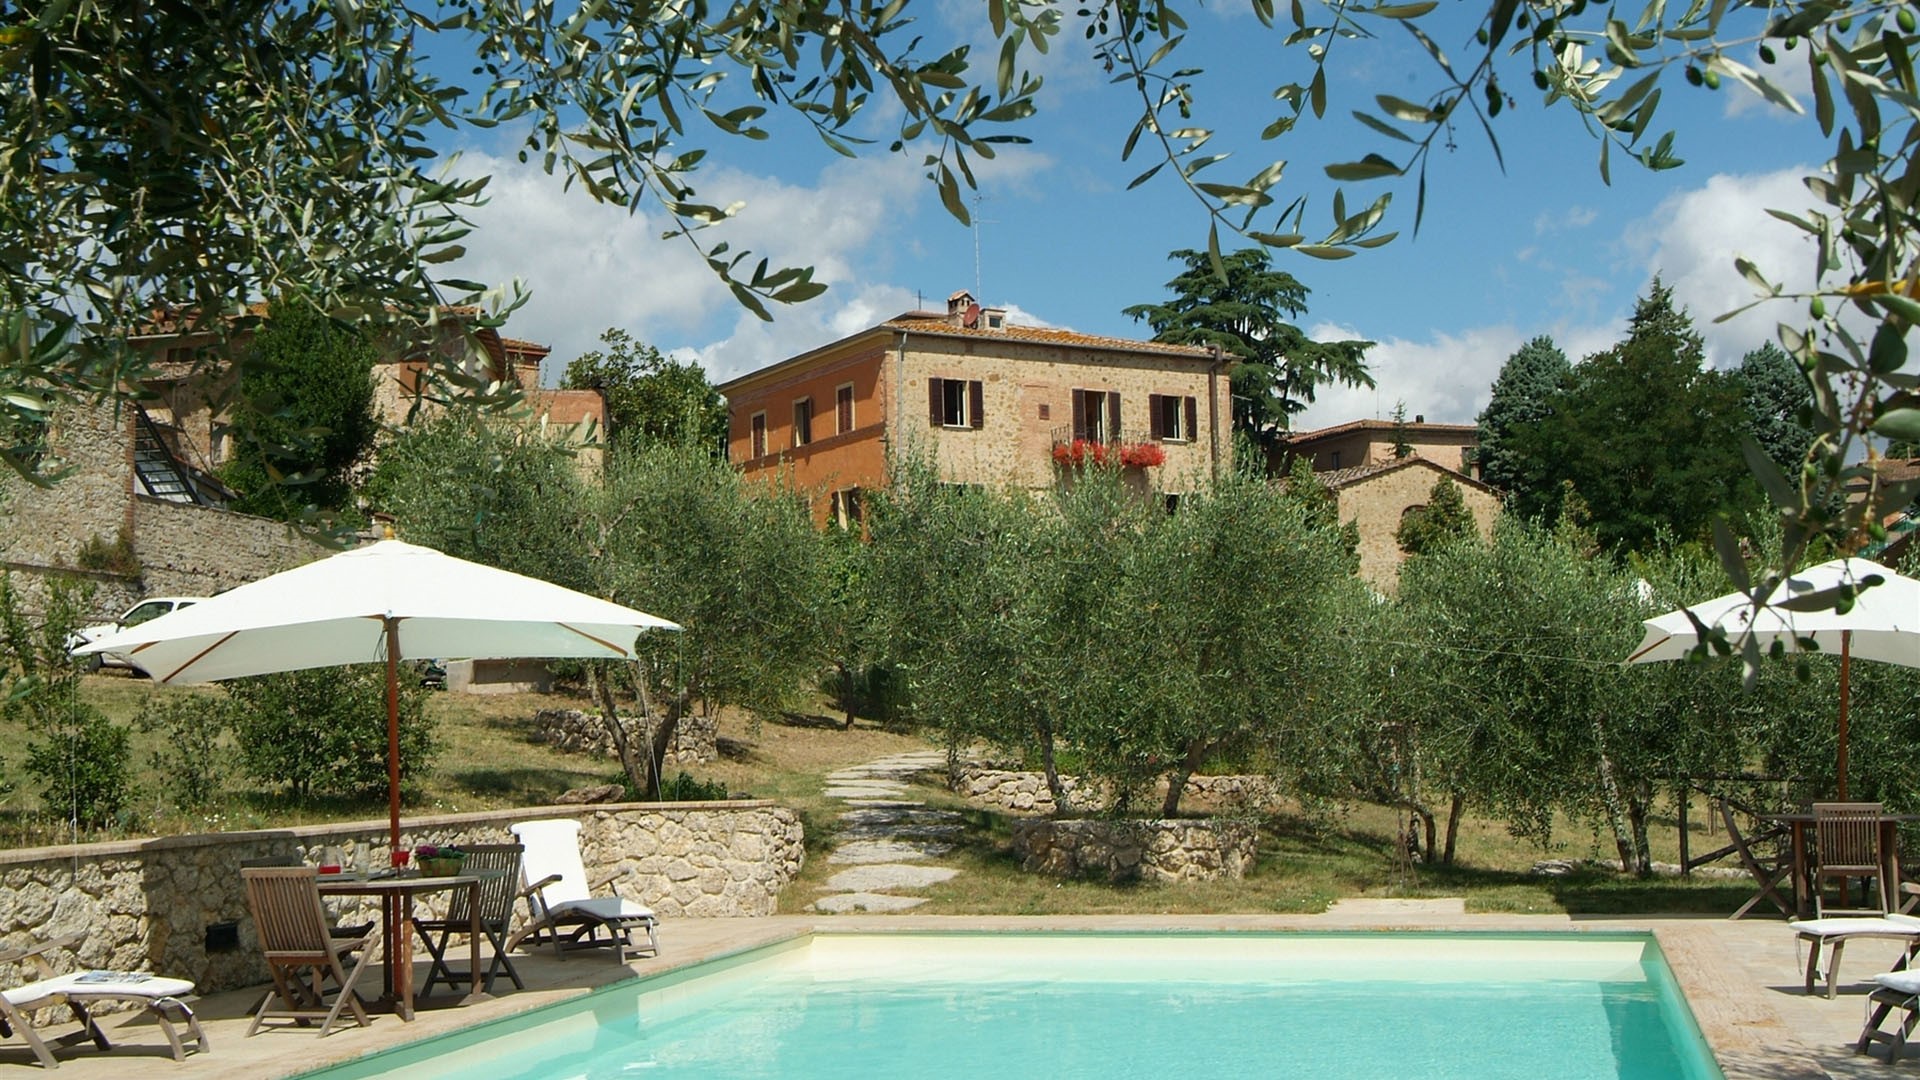 Affitto villa Siena Toscana antica dimona signorile Murlo piscina vacanza benessere Toscana